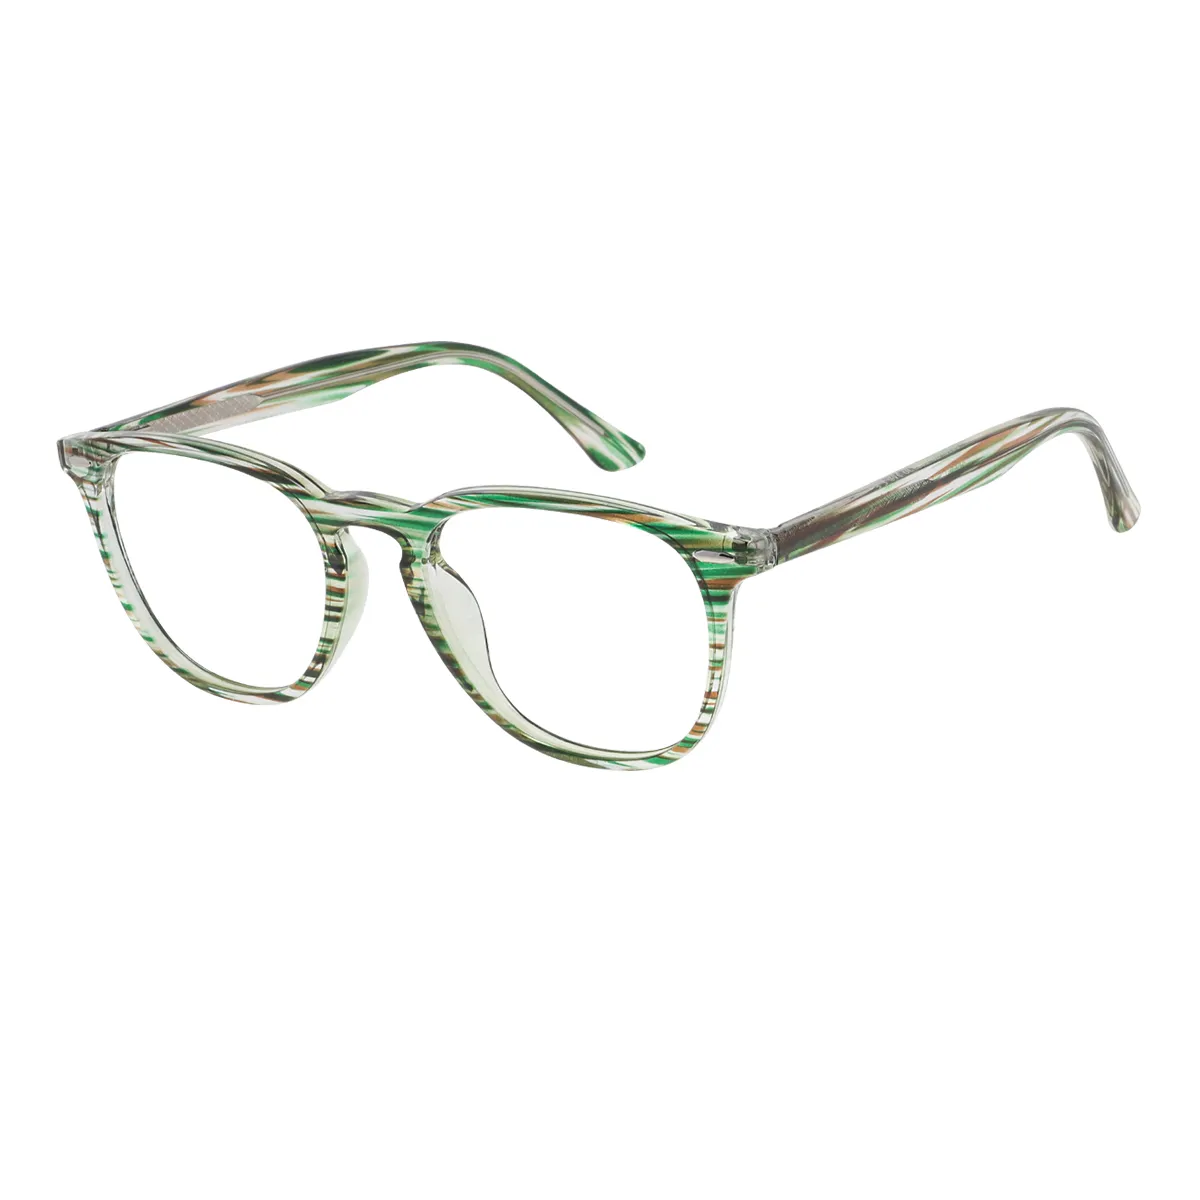 Boyles - Square Green Glasses for Men & Women - EFE